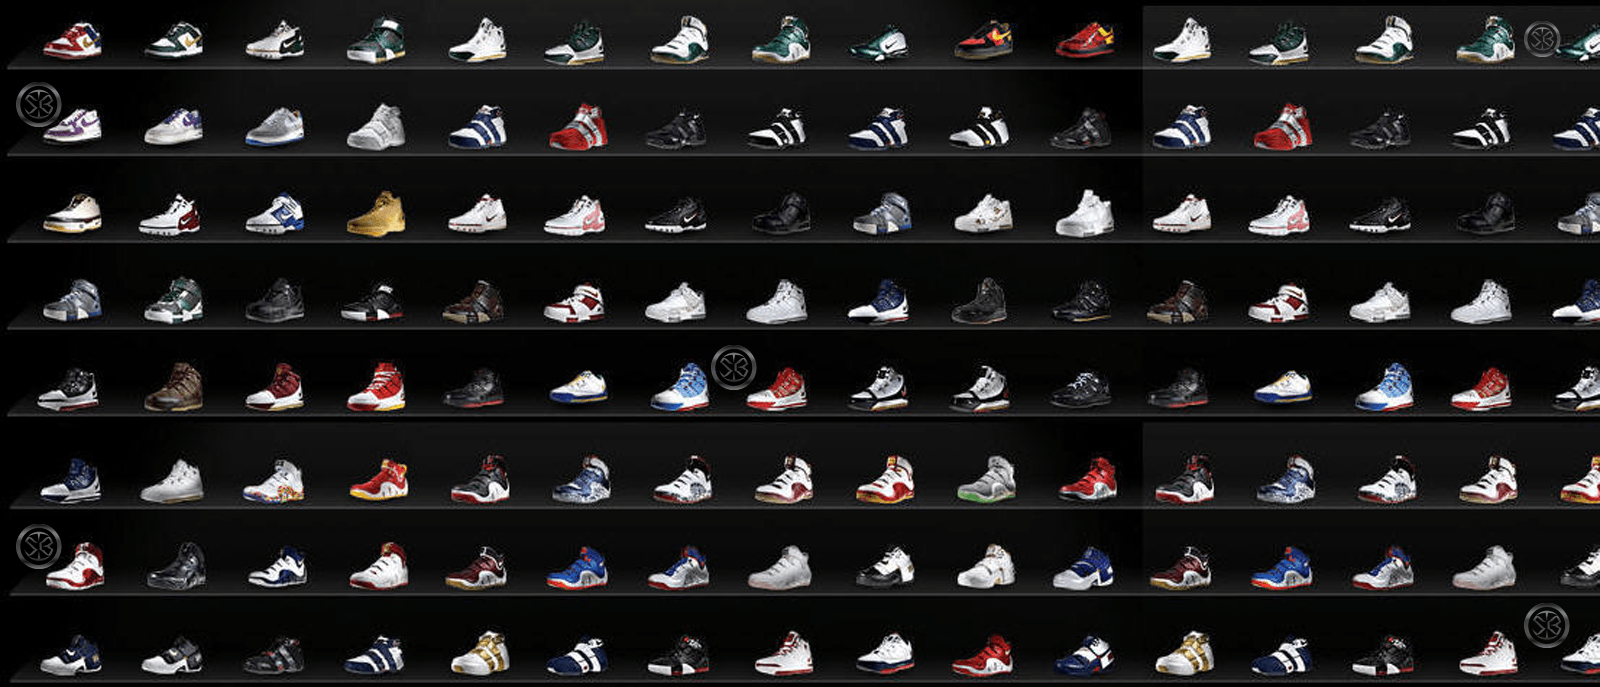 Best Sneaker Wallpaper